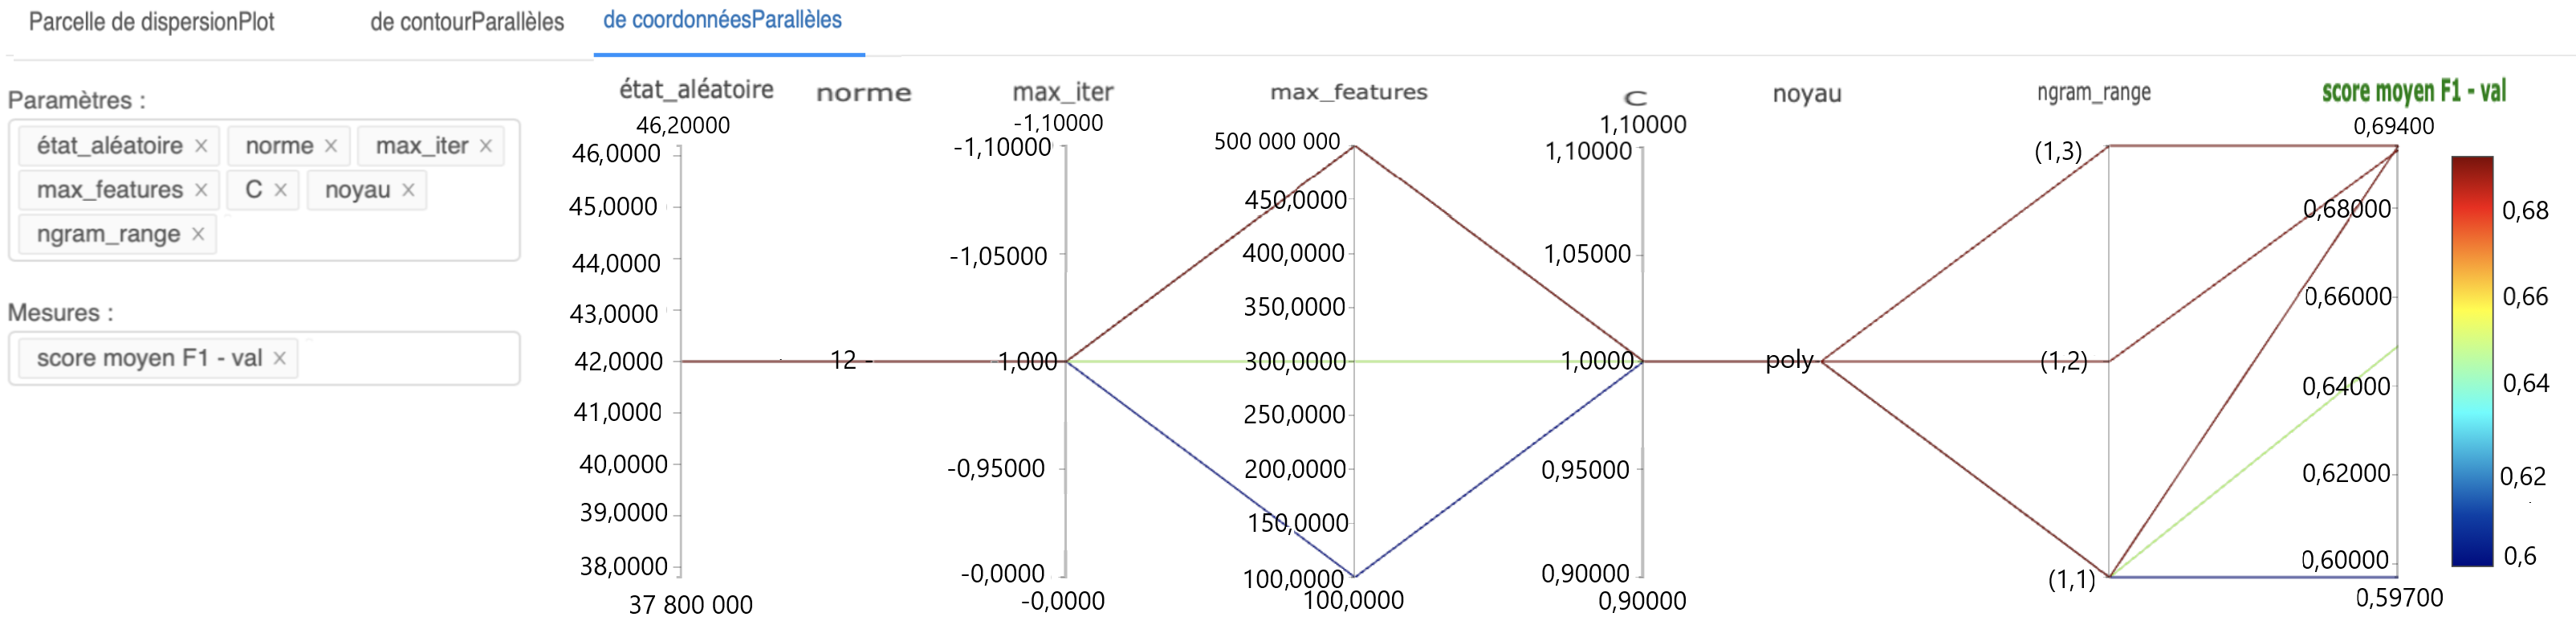 Figure 7 : Configuration du diagramme à coordonnées parallèles pour visualiser les effets de différents paramètres sur les mesures d'intérêt